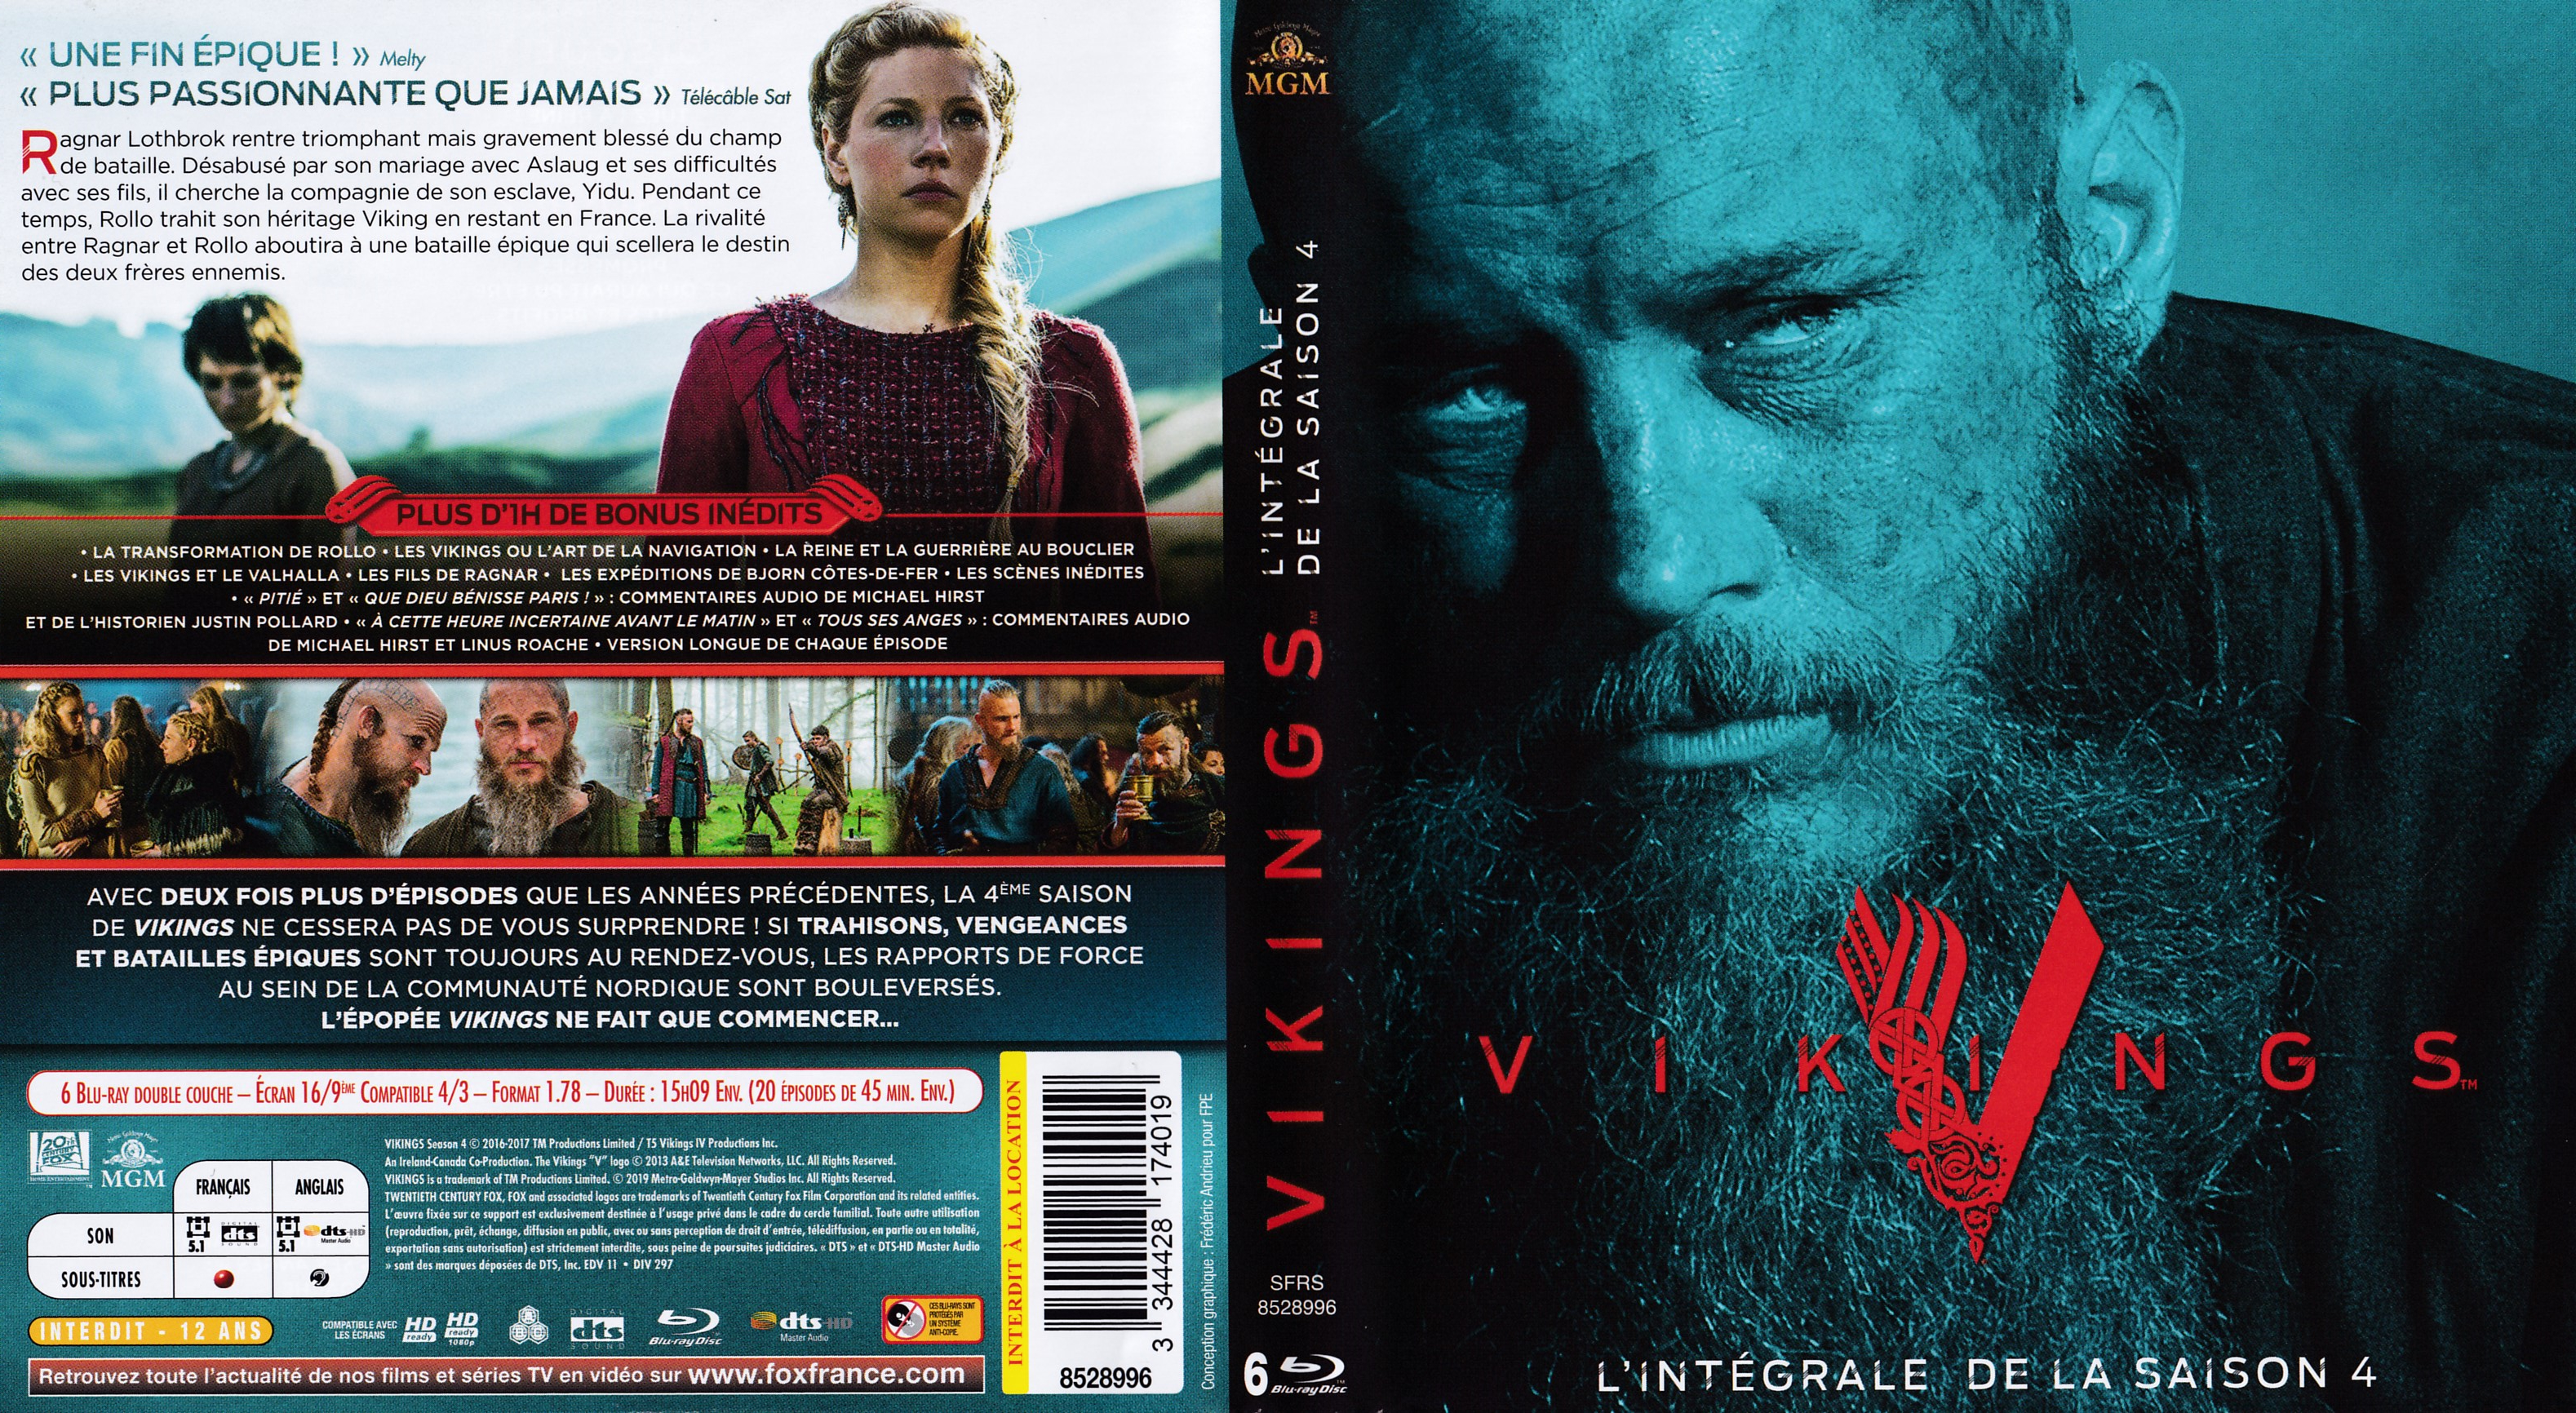 Jaquette DVD Vikings Saison 4 COFFRET